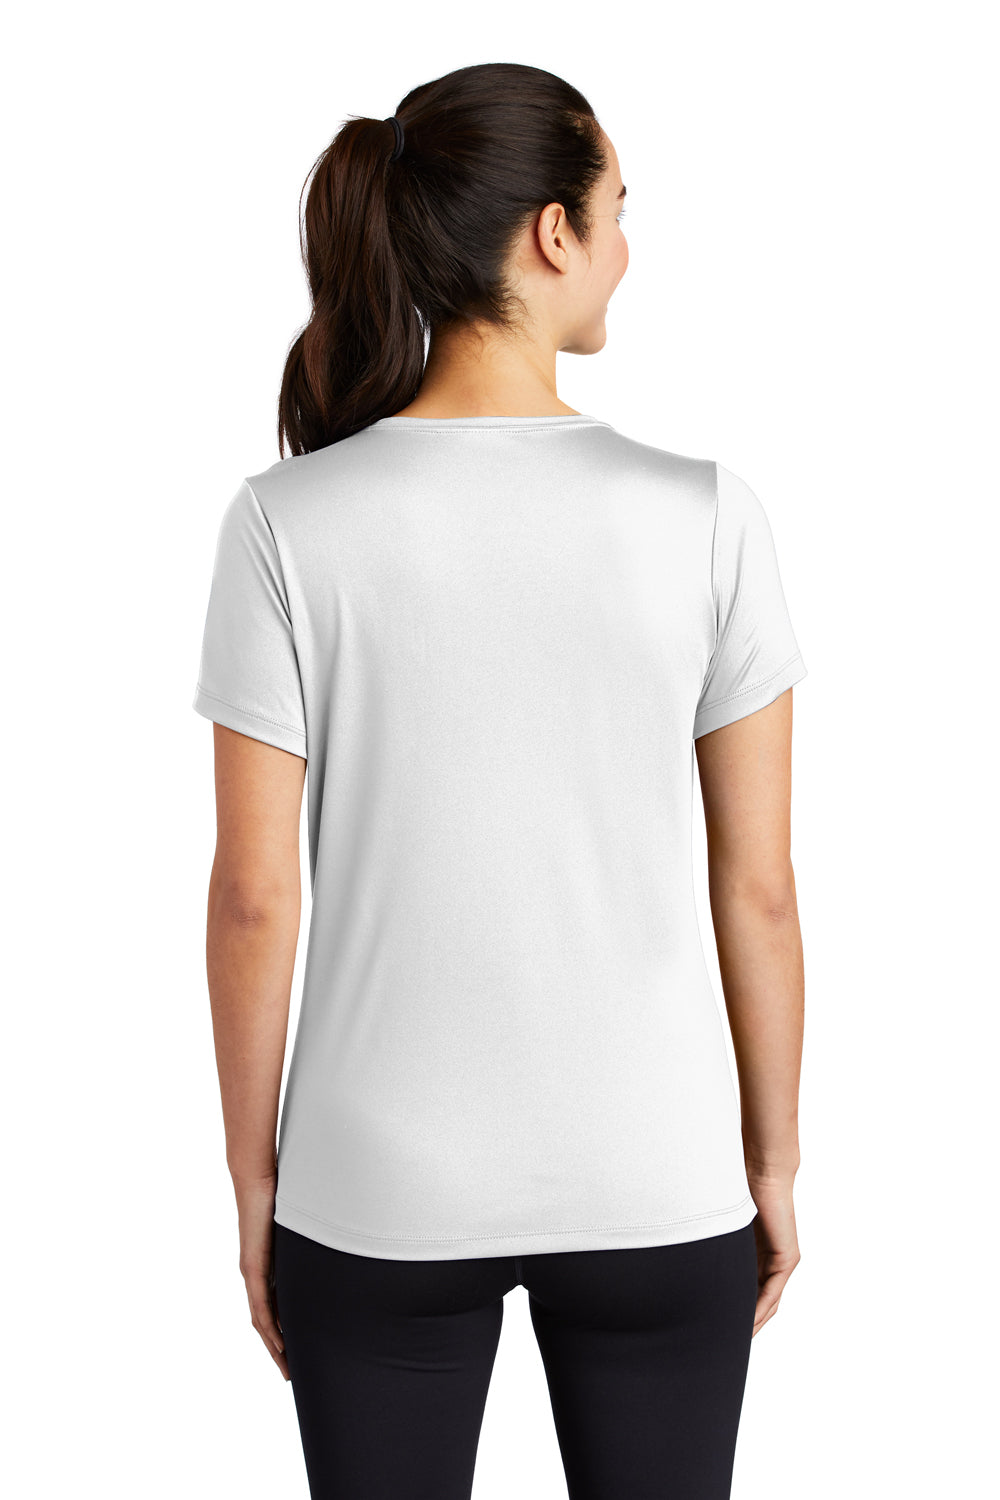 Sport-Tek Womens Short Sleeve Scoop Neck T-Shirt White Side